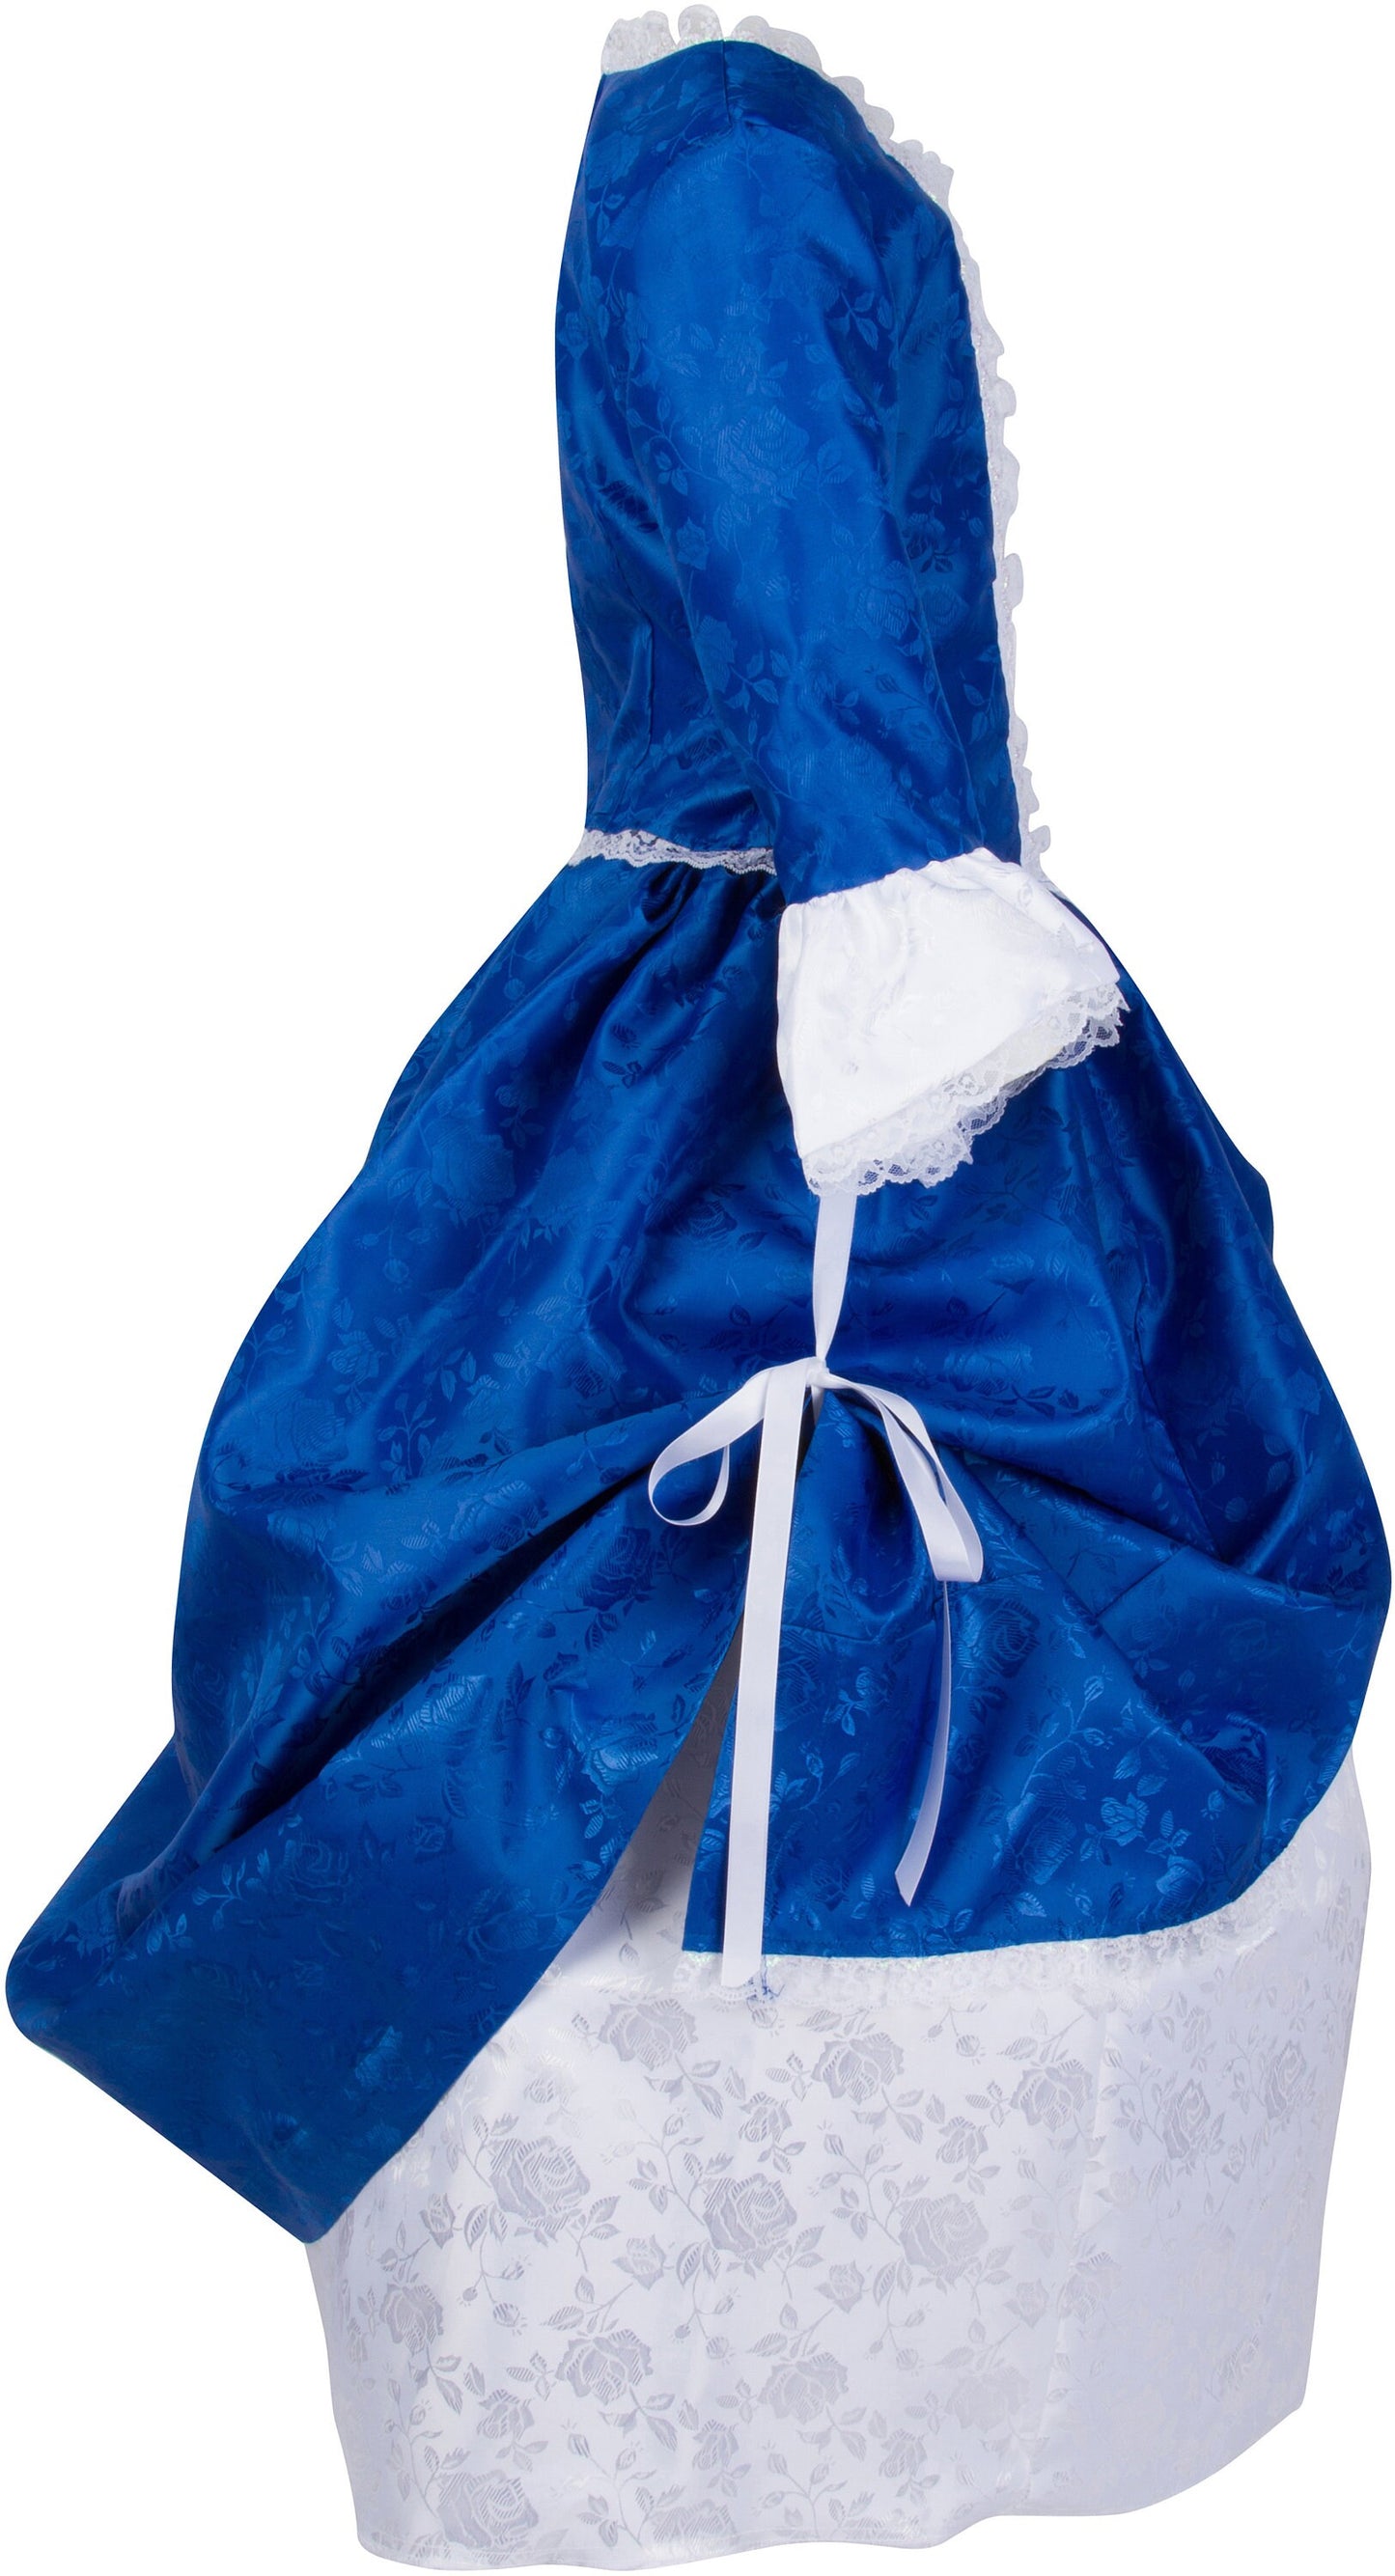 Children’s Betsy Ross Costume